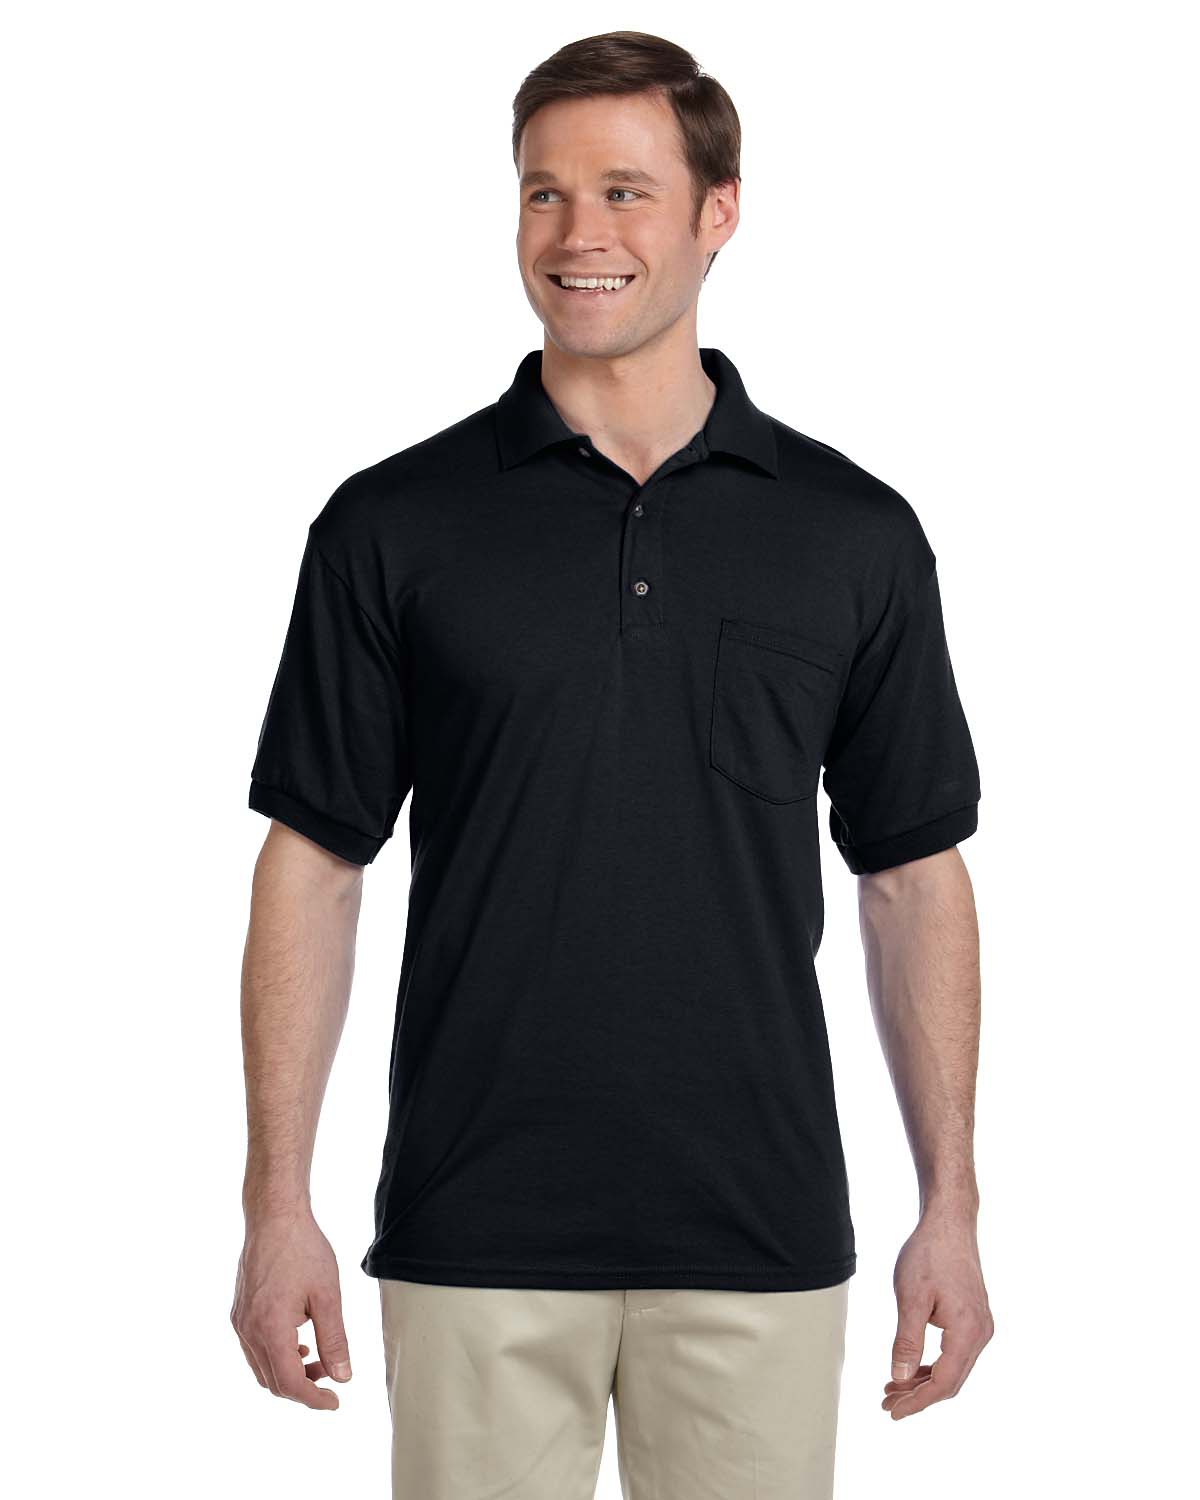 Gildan 8900 Ultra Blend Jersey Sport Shirt with a Pocket $8.76